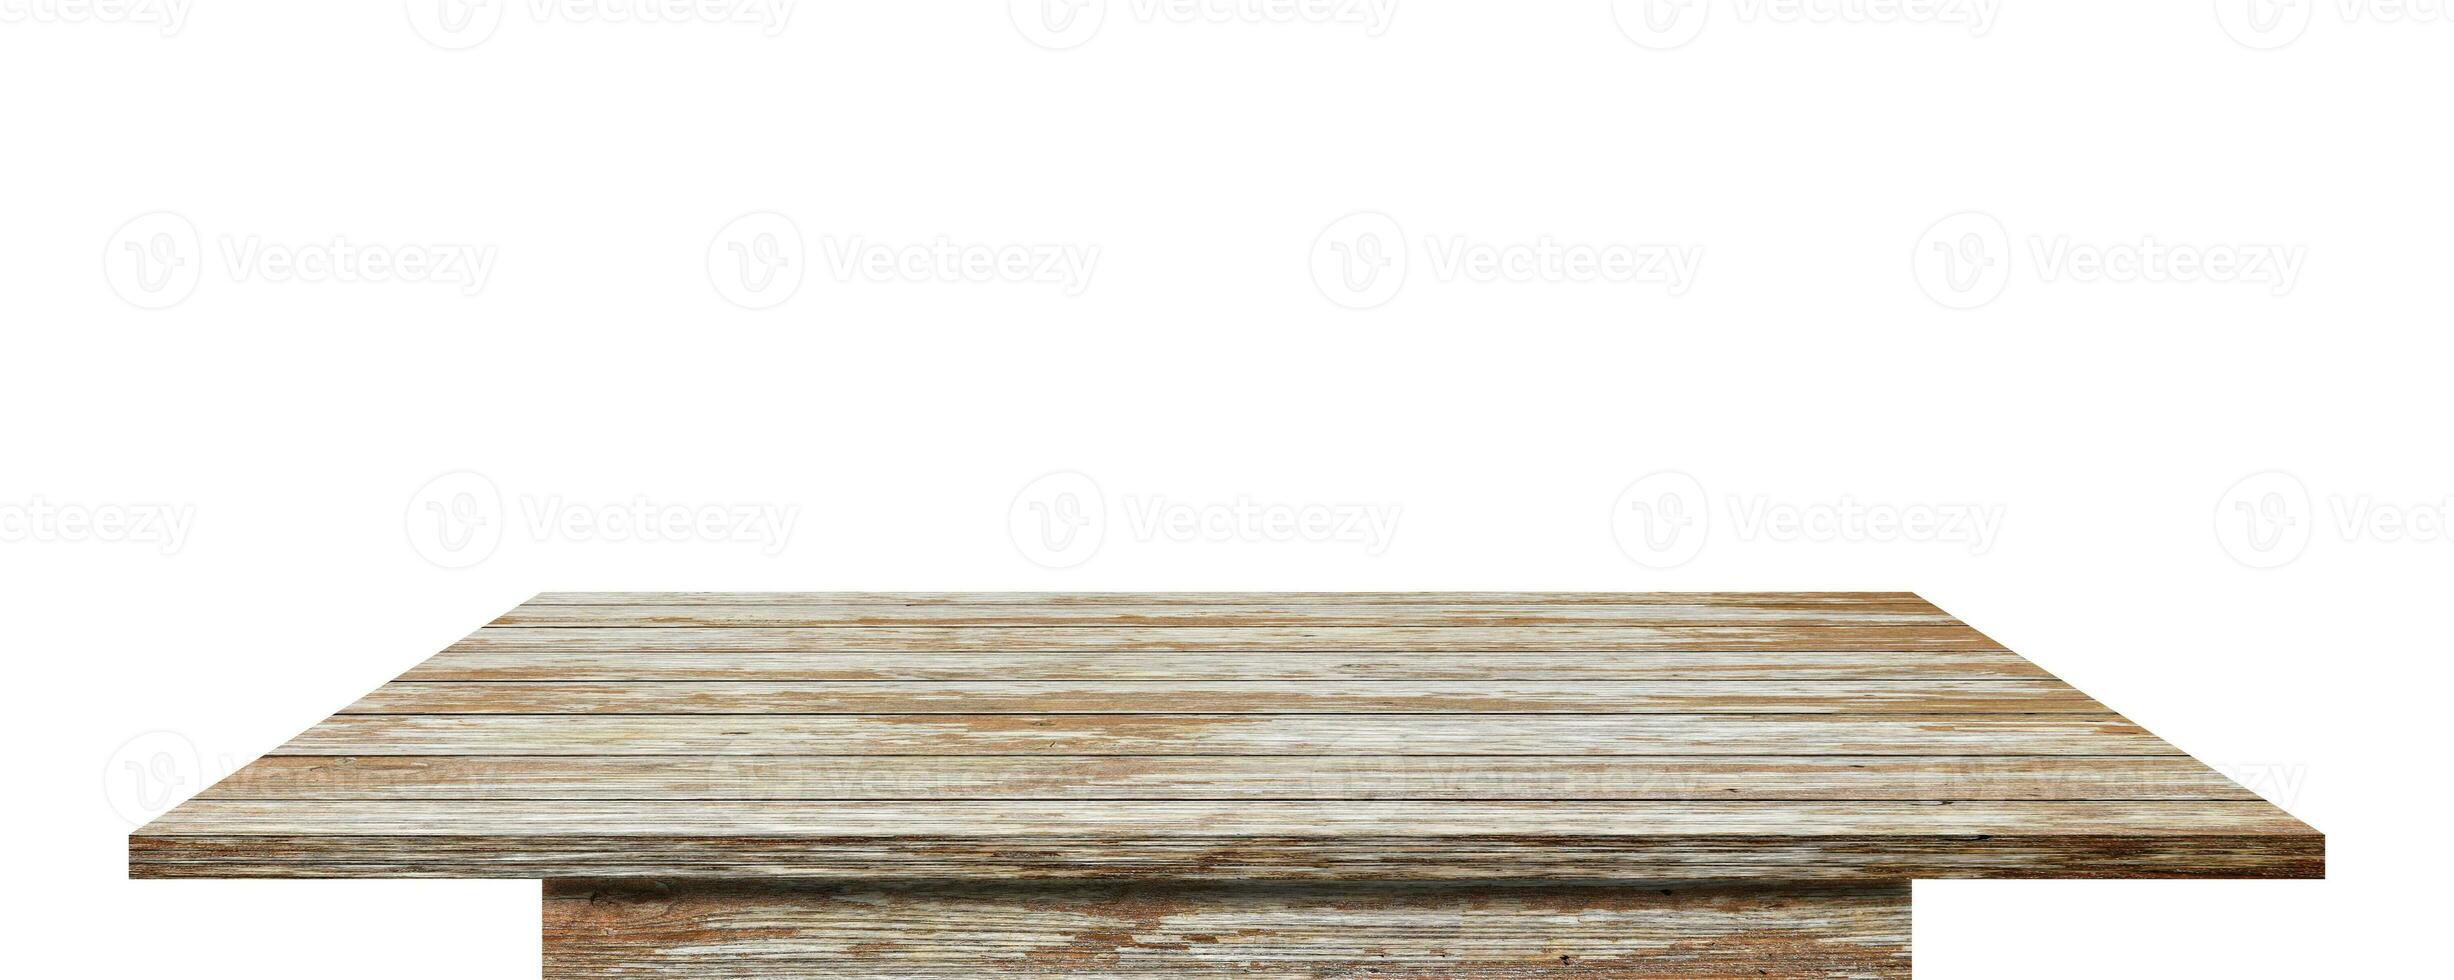 tampo da mesa de madeira vazio isolado no fundo branco. com trajeto de grampeamento. foto